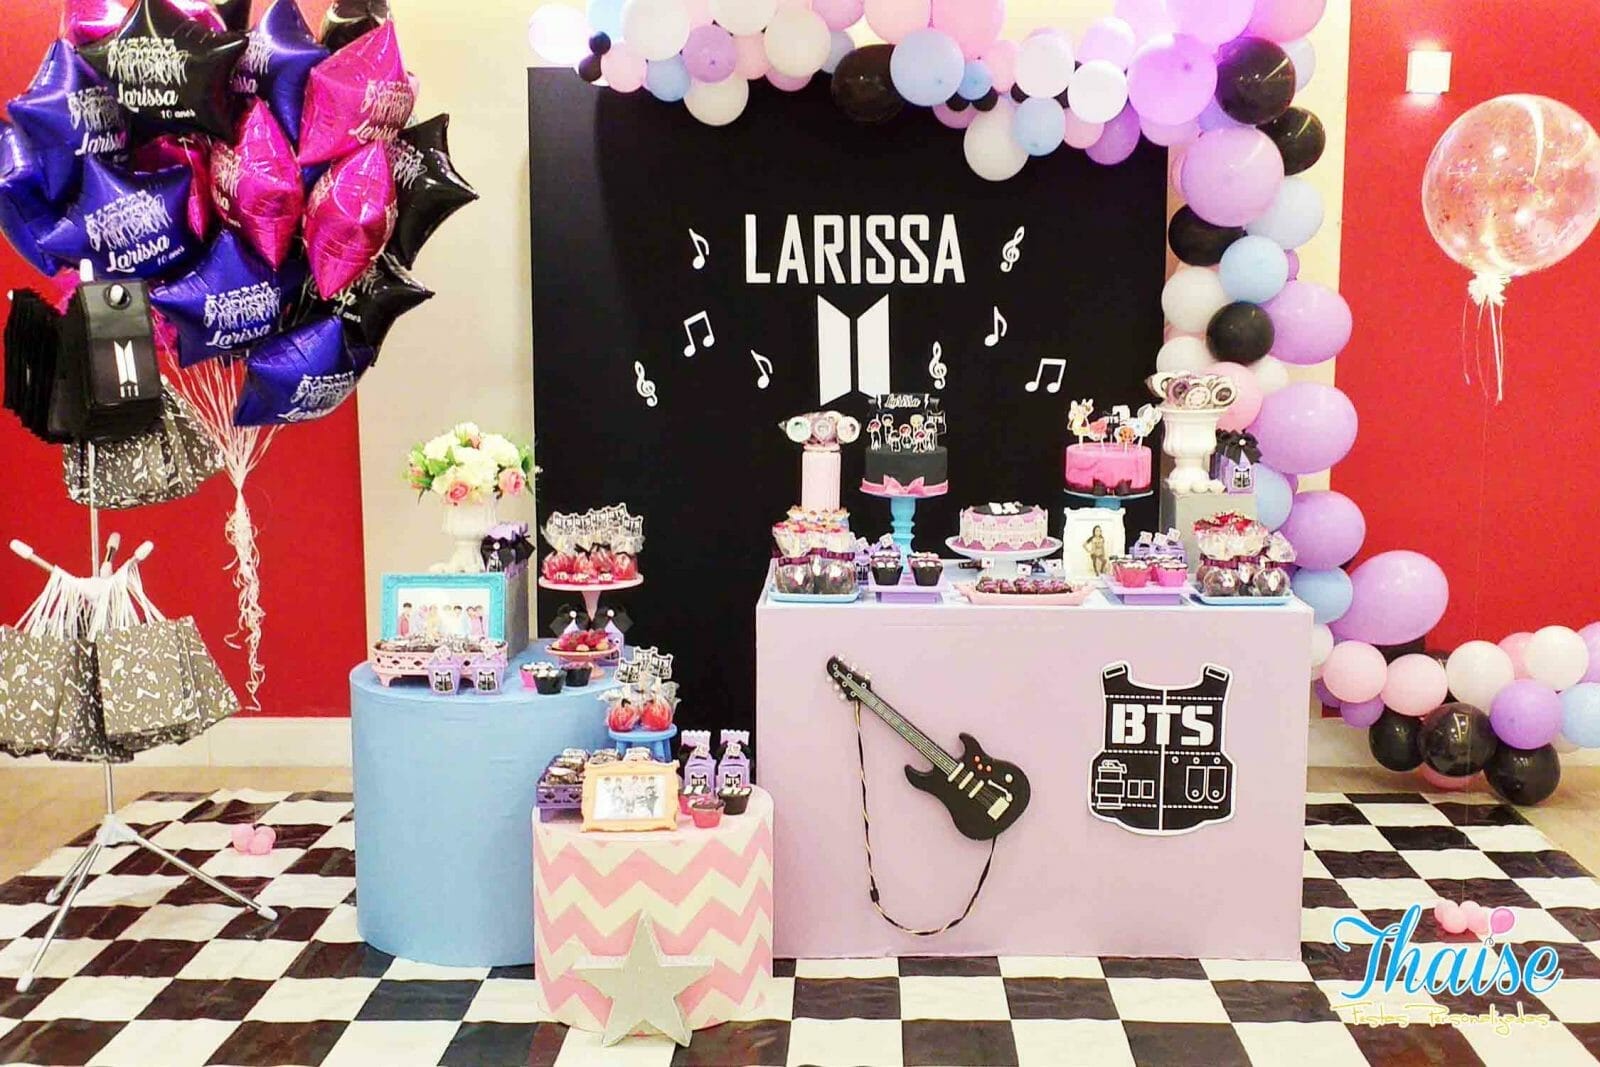 Festa infantil de menina decorada com balões cor de rosa e símbolos musicais e do BTS